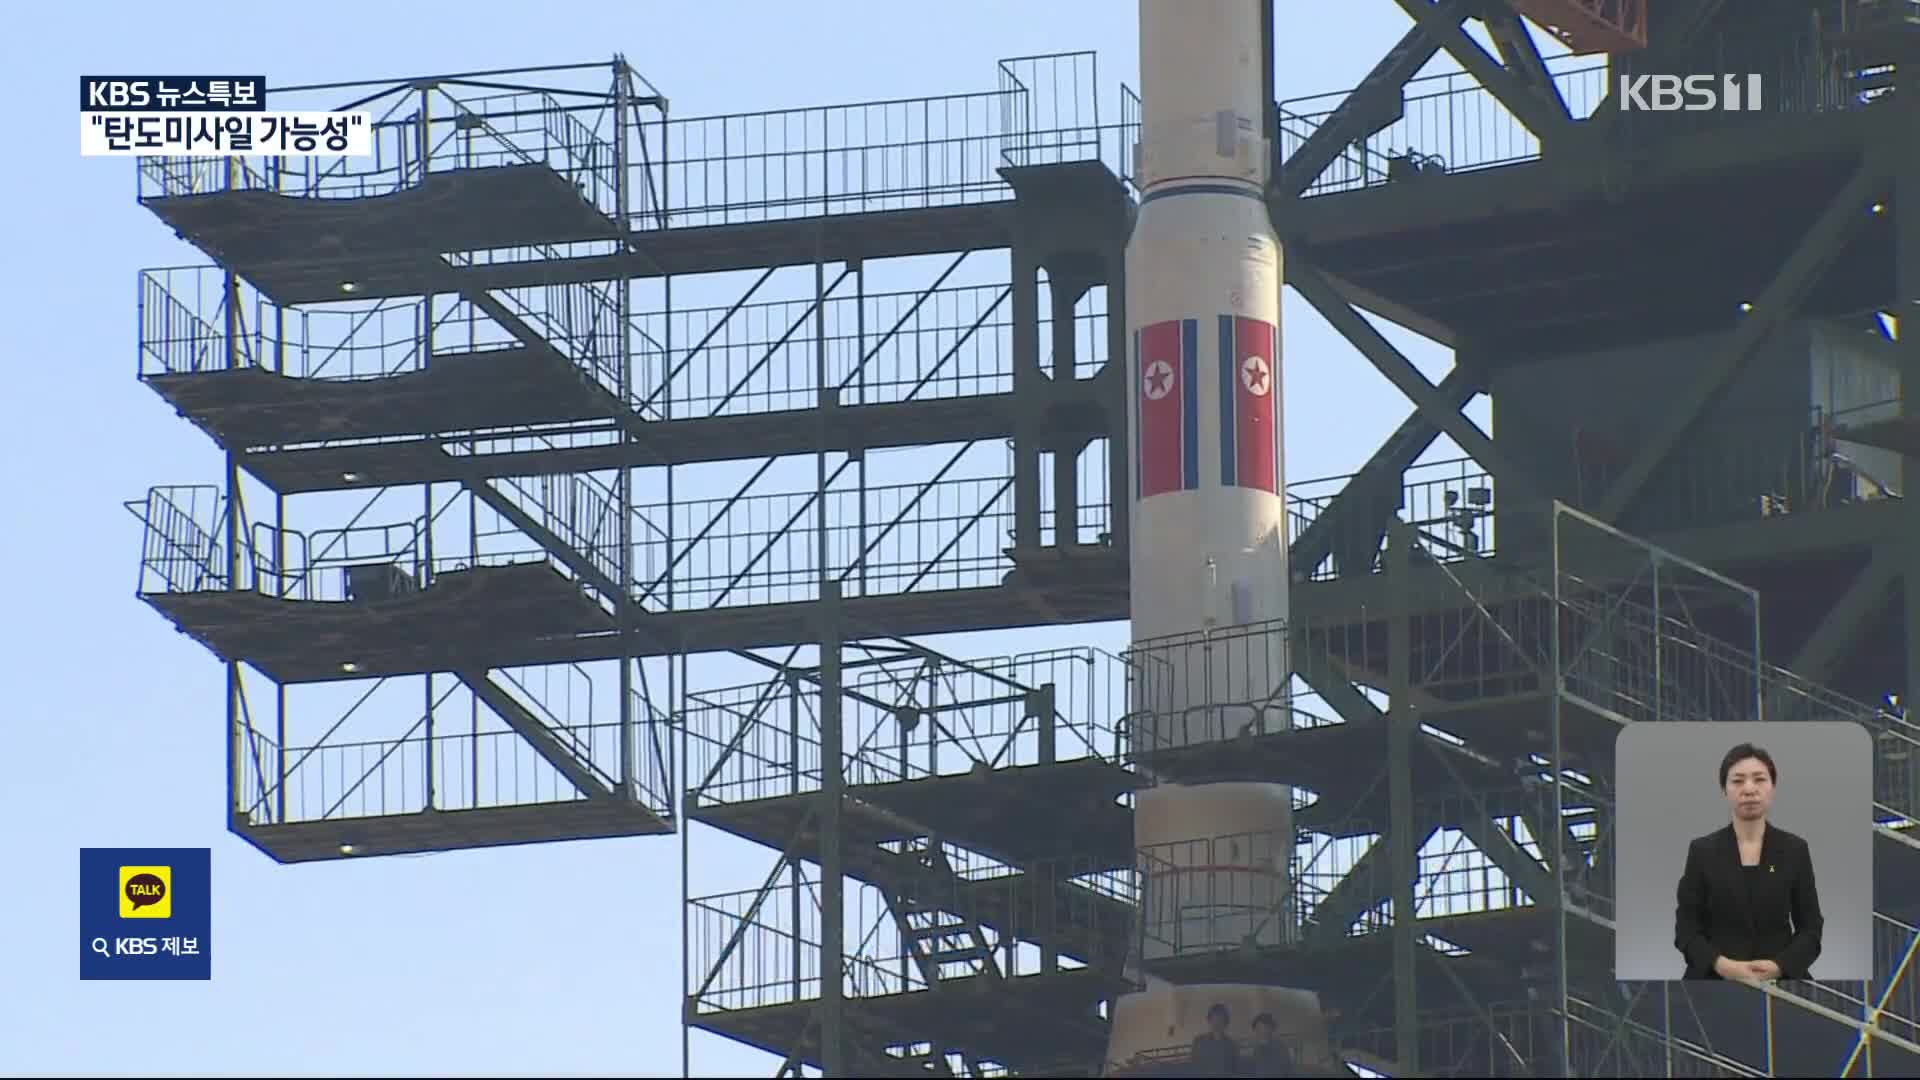 [특보] NHK “북한 오전 6시 28분 미사일 발사한 듯”